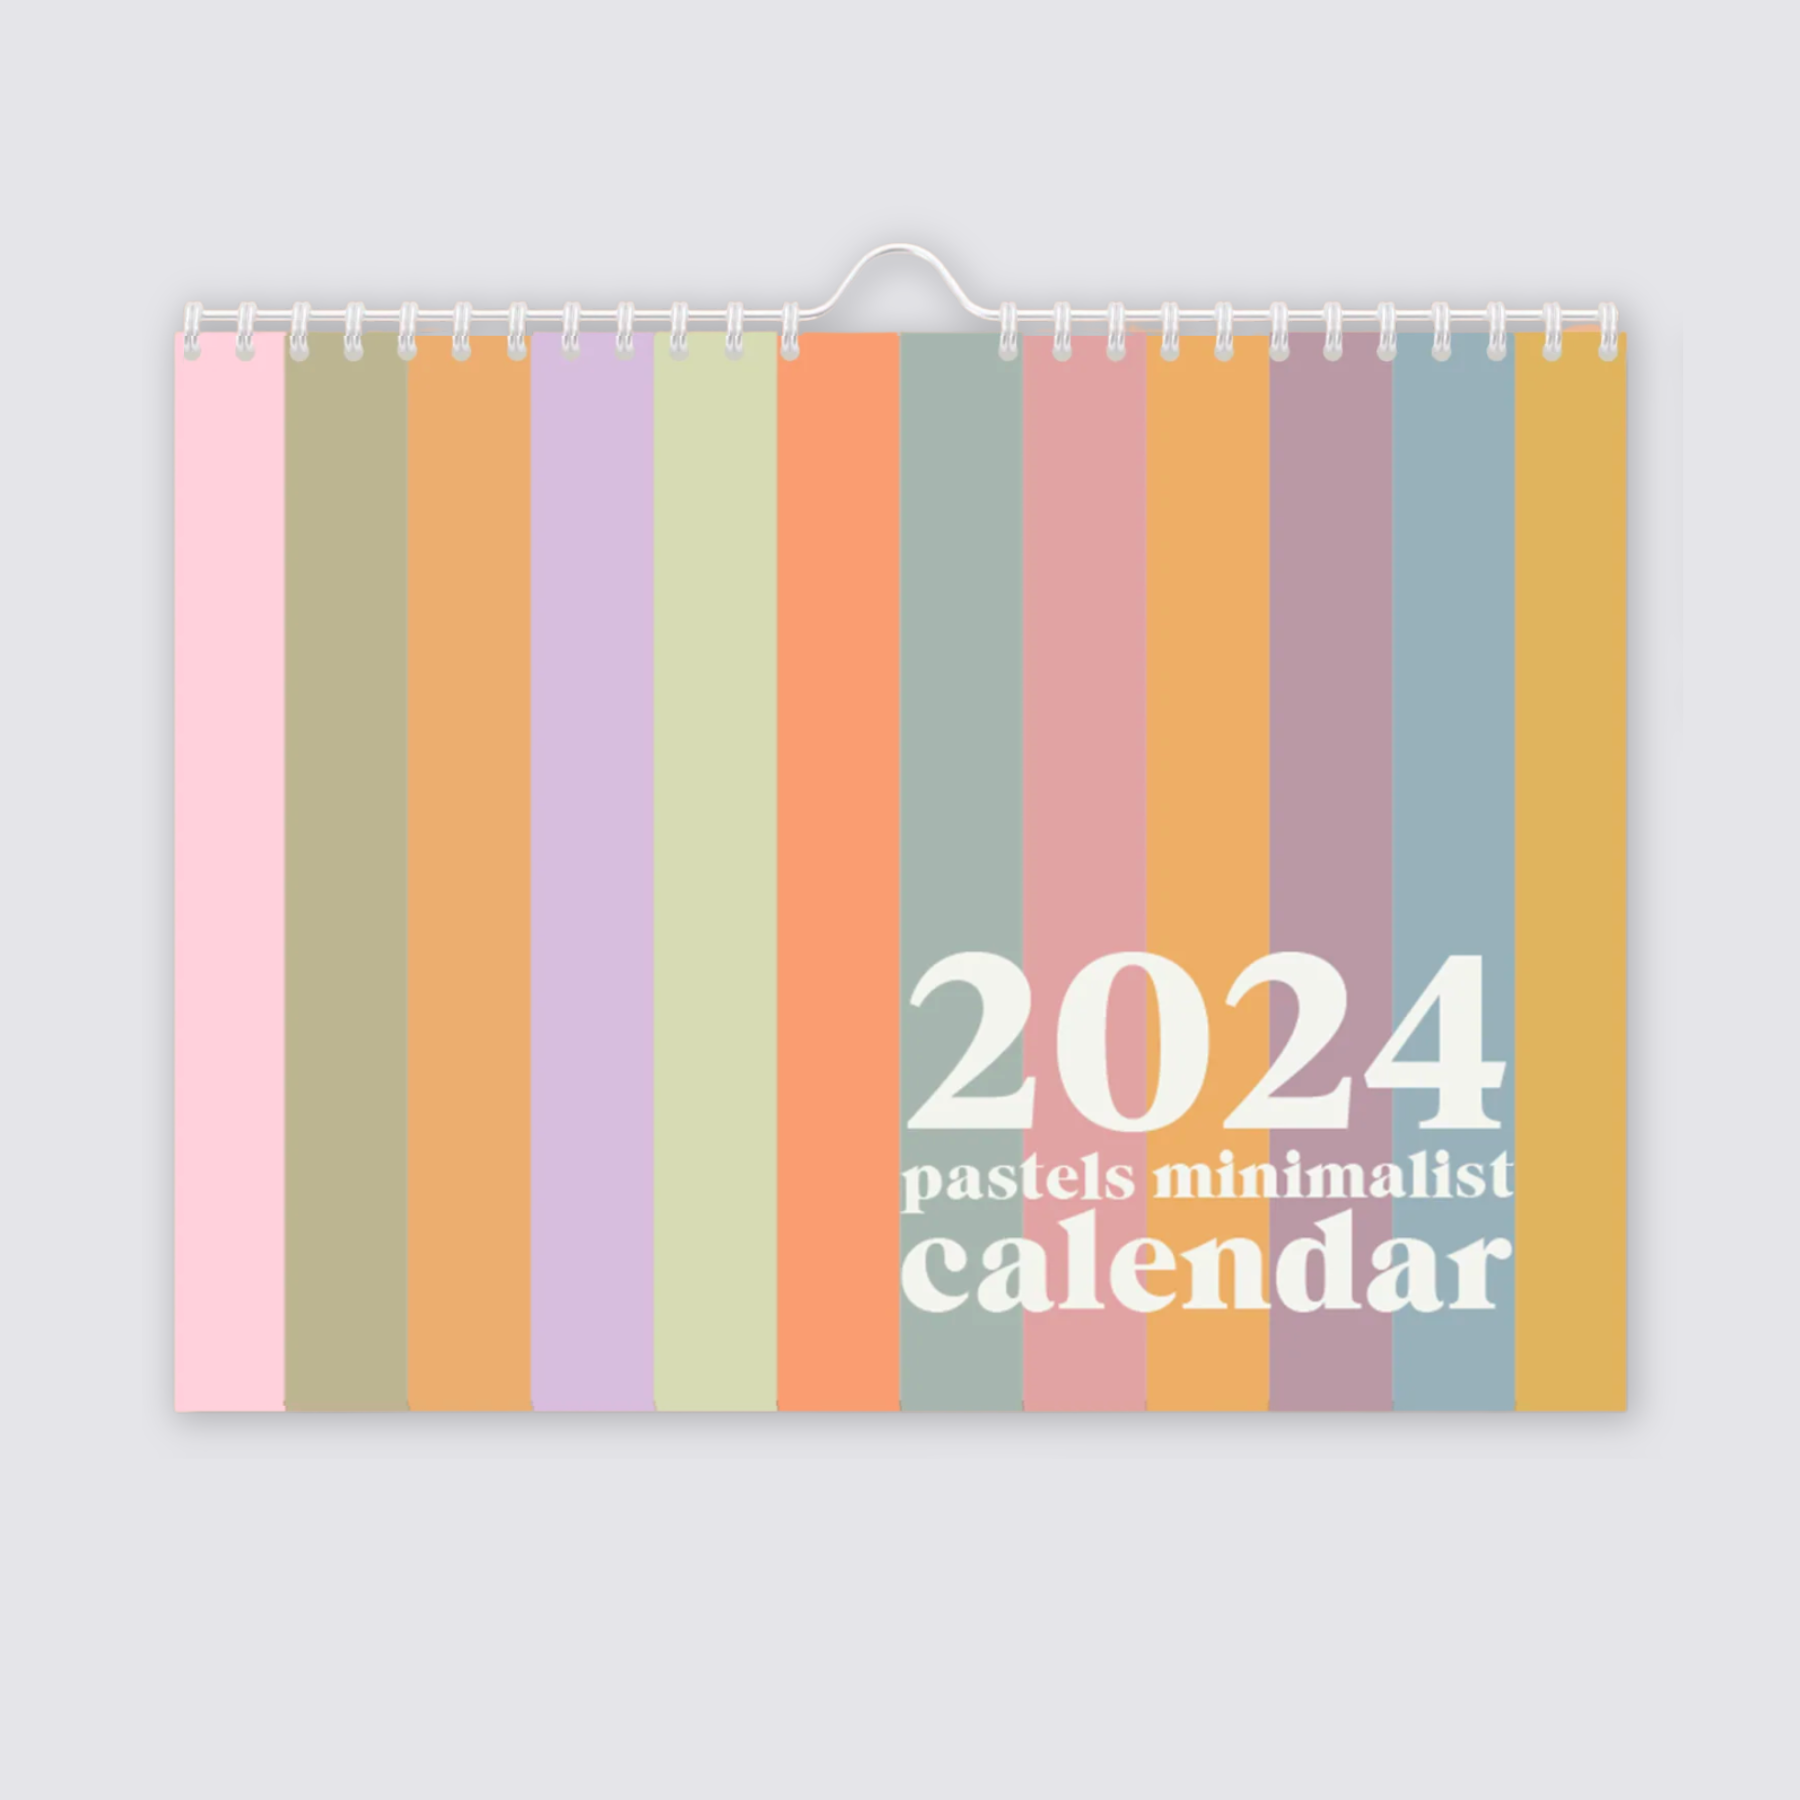 Minimalist landscape calendar 2024